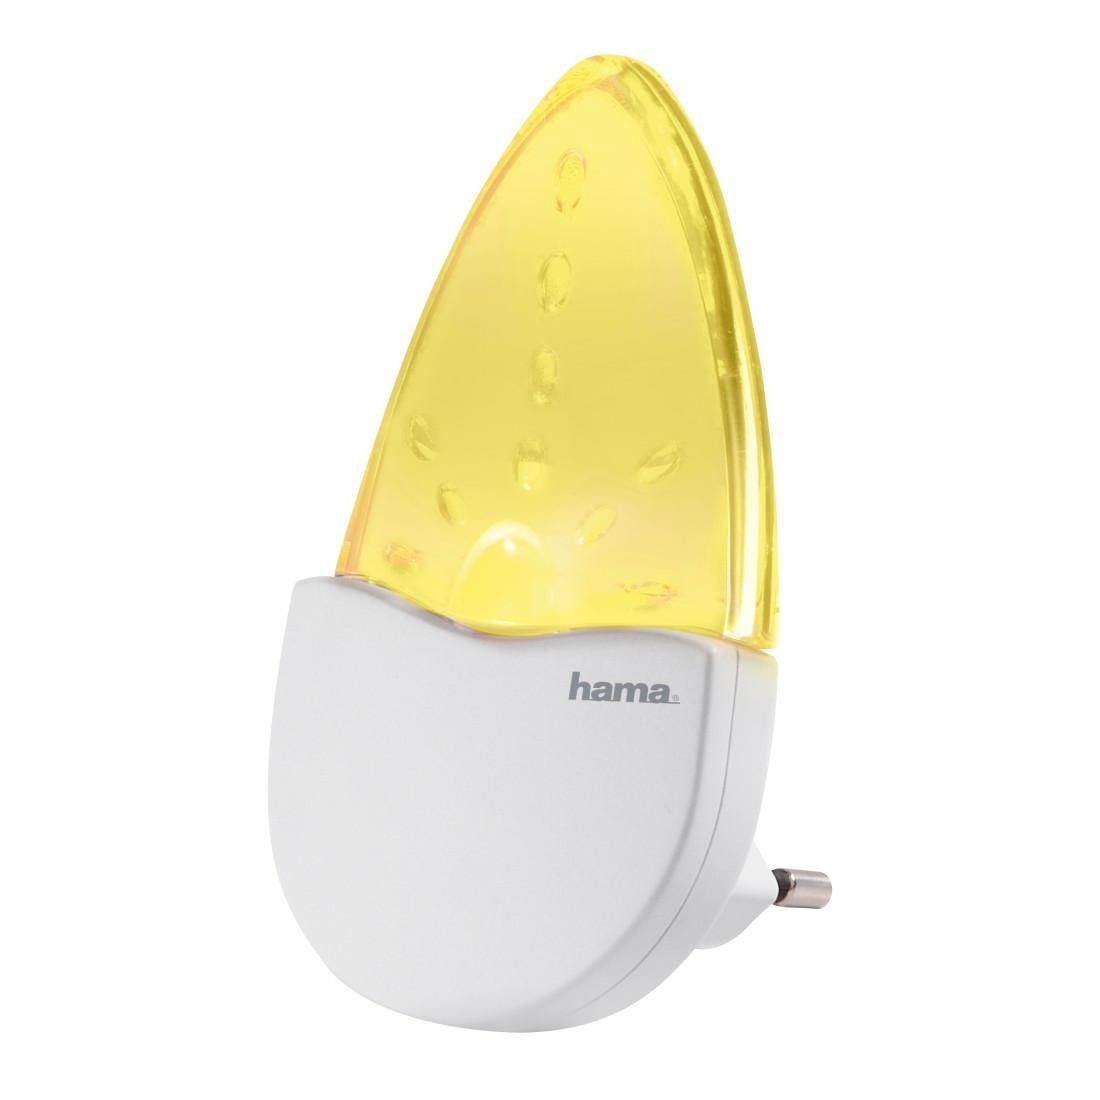 Hama LED Steckdose LED bernsteinfarben Nachtlichtfunktion, für integriert, Baby, Kinder, Nachtlicht Nachtlampe Bernstein, Schlafzimmer, fest